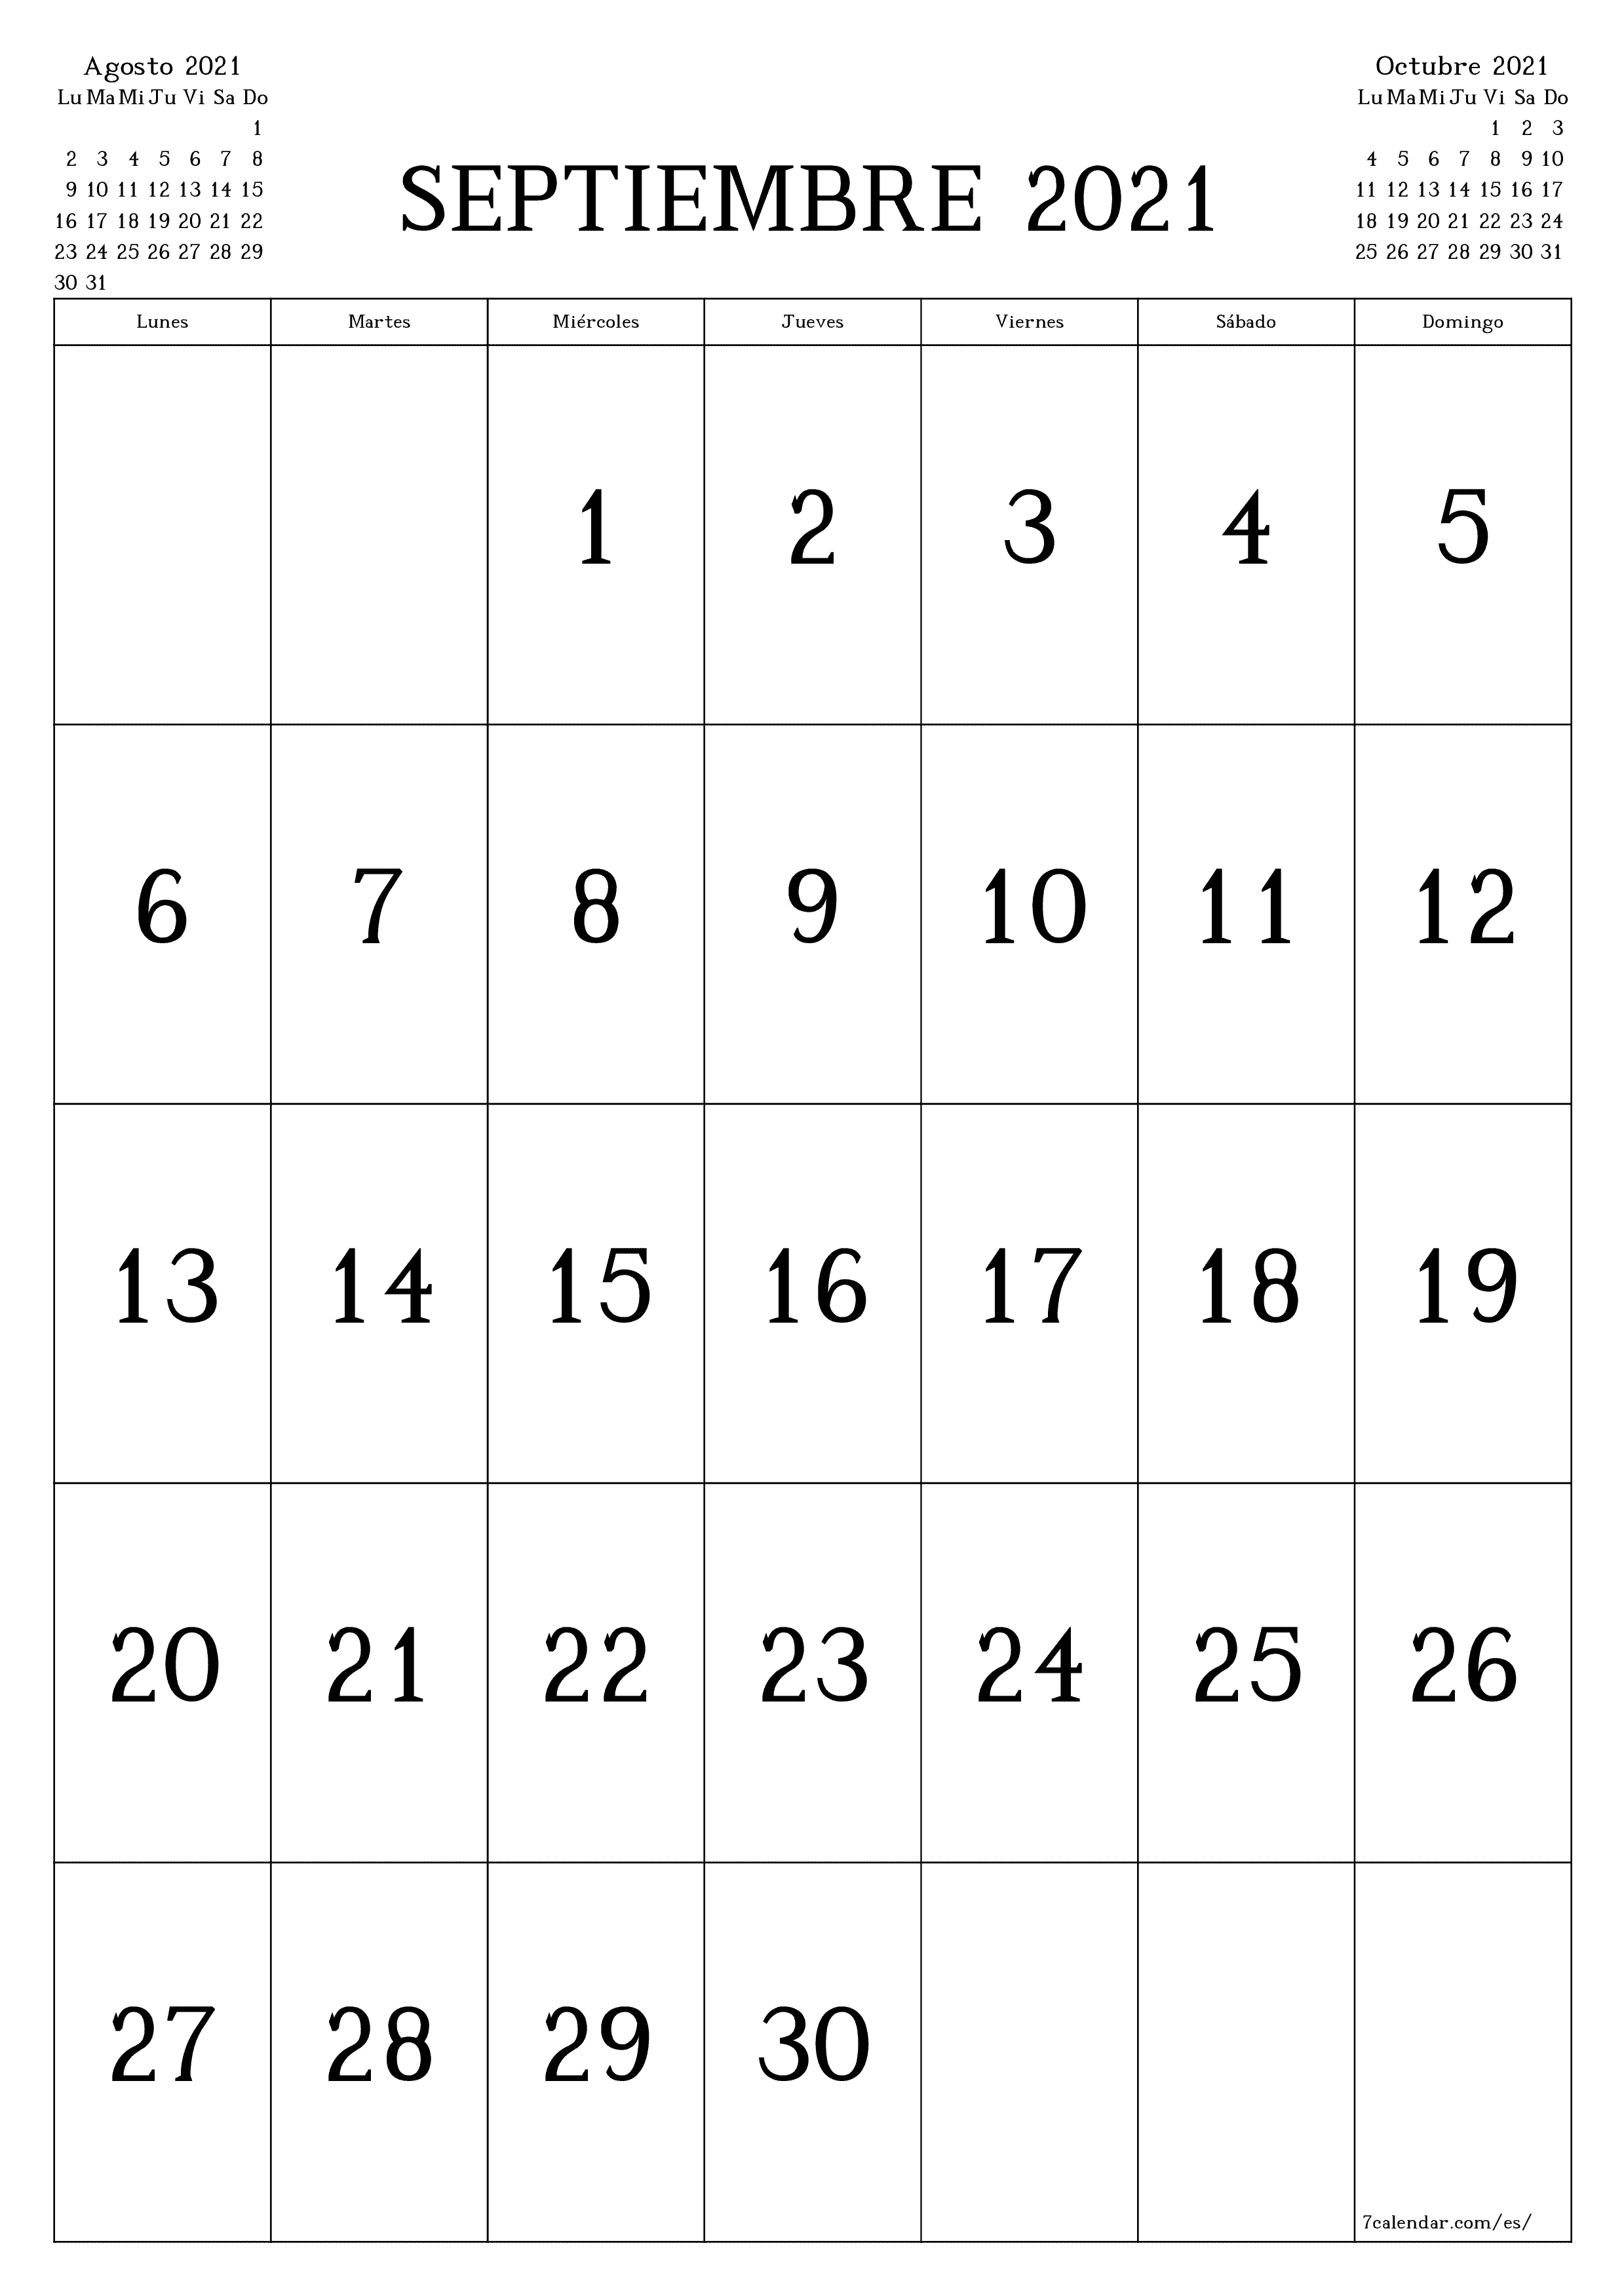 Calendario mensual en blanco para el mes Septiembre 2021 guardar e imprimir en PDF PNG Spanish - 7calendar.com